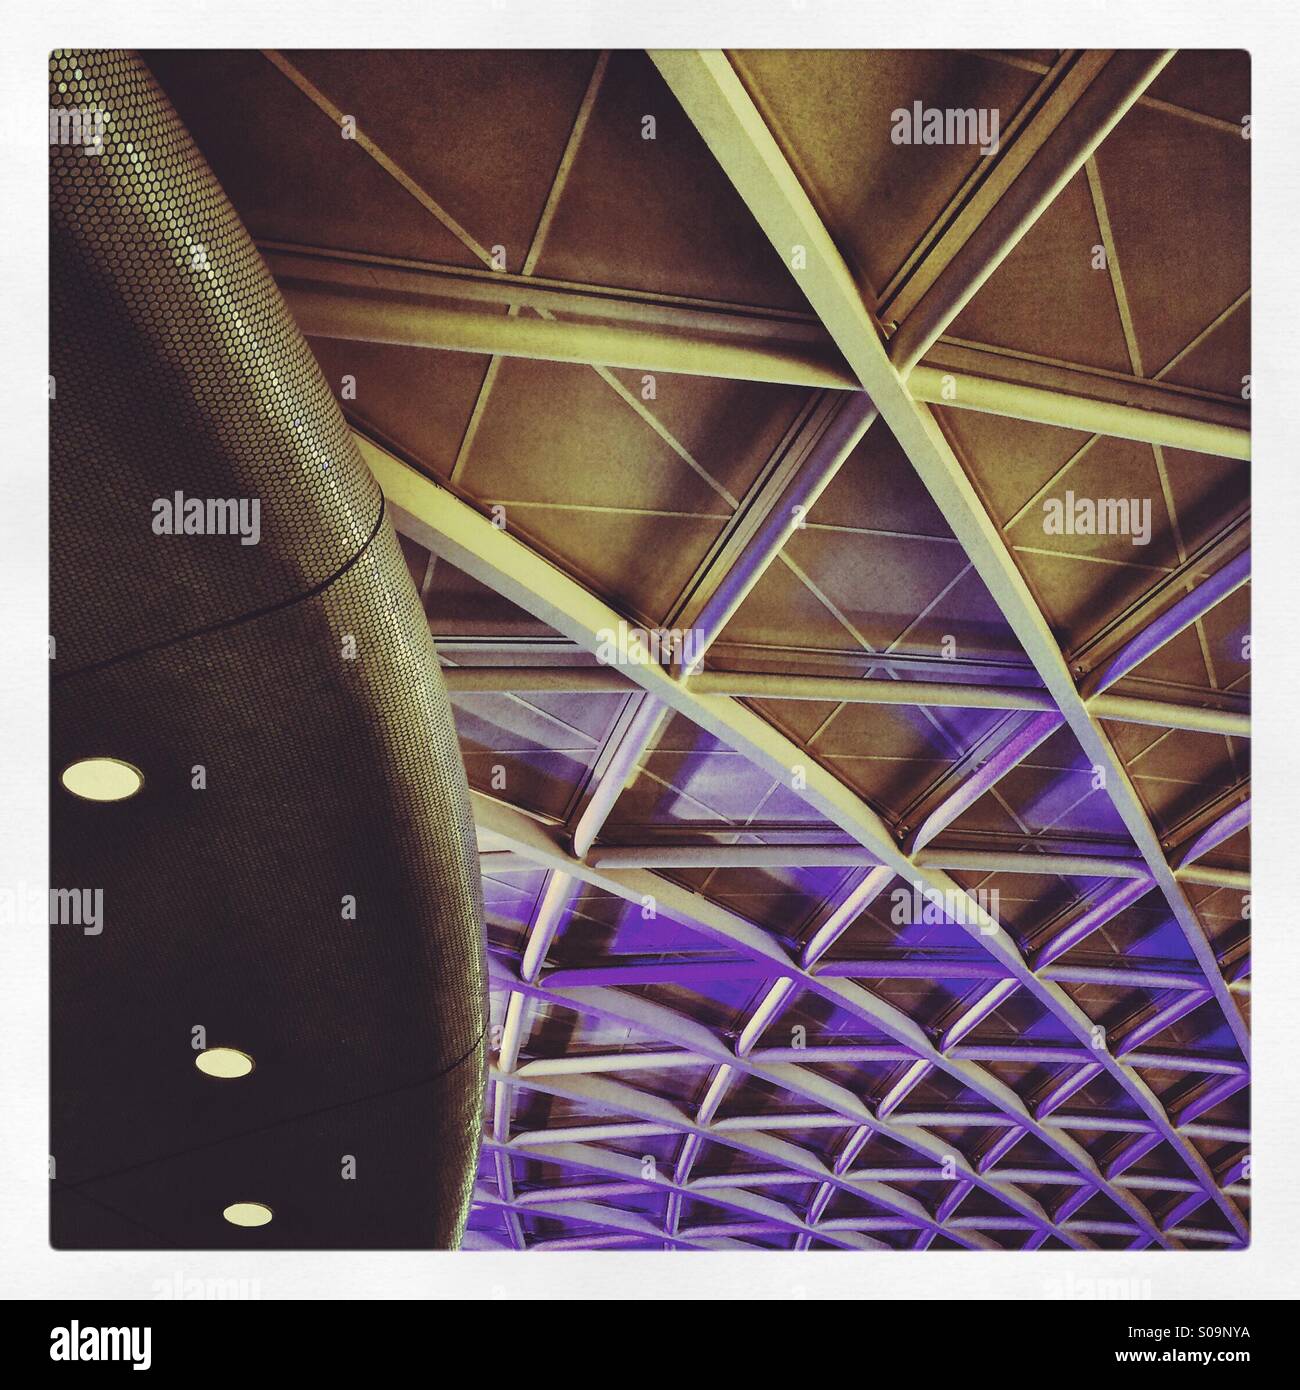 Der Dachhimmel am Bahnhof Kings Cross, London Stockfoto